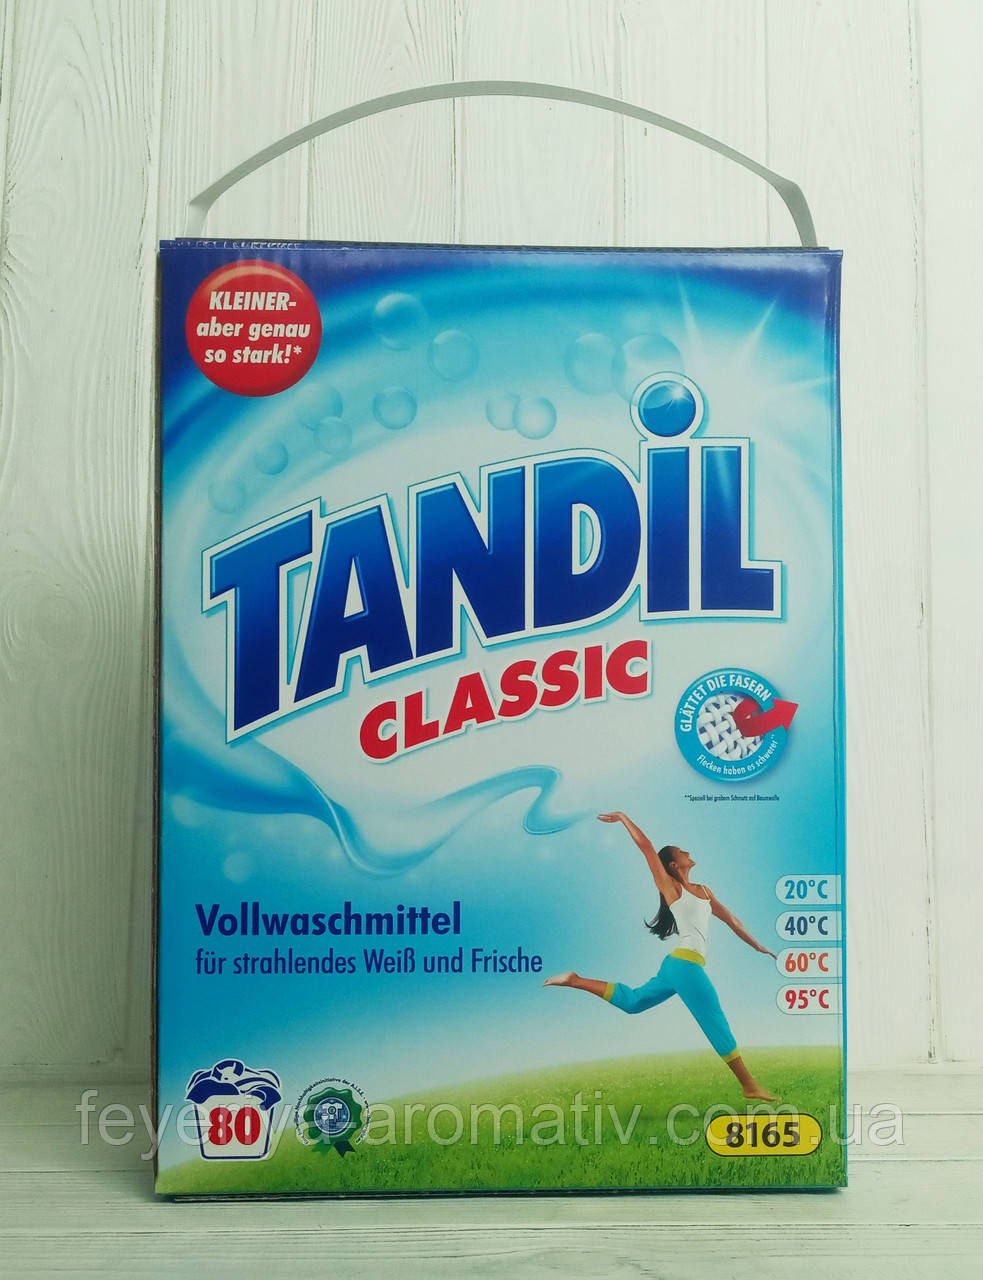 Пральний порошок Tandil Classic 80 циклов прання 5,2 кг Німеччина